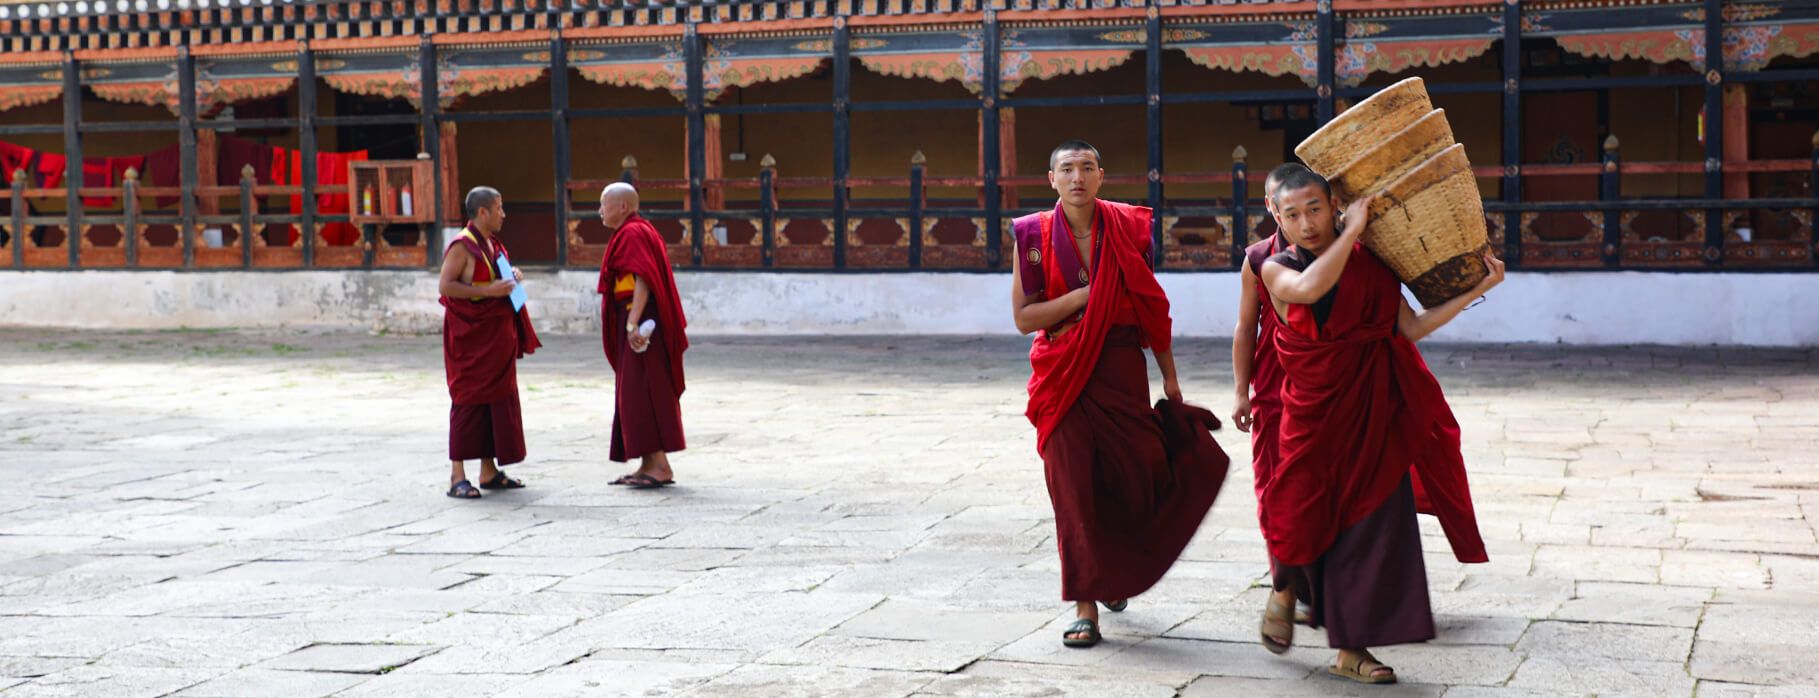 Bhutan Trips of Hapiness